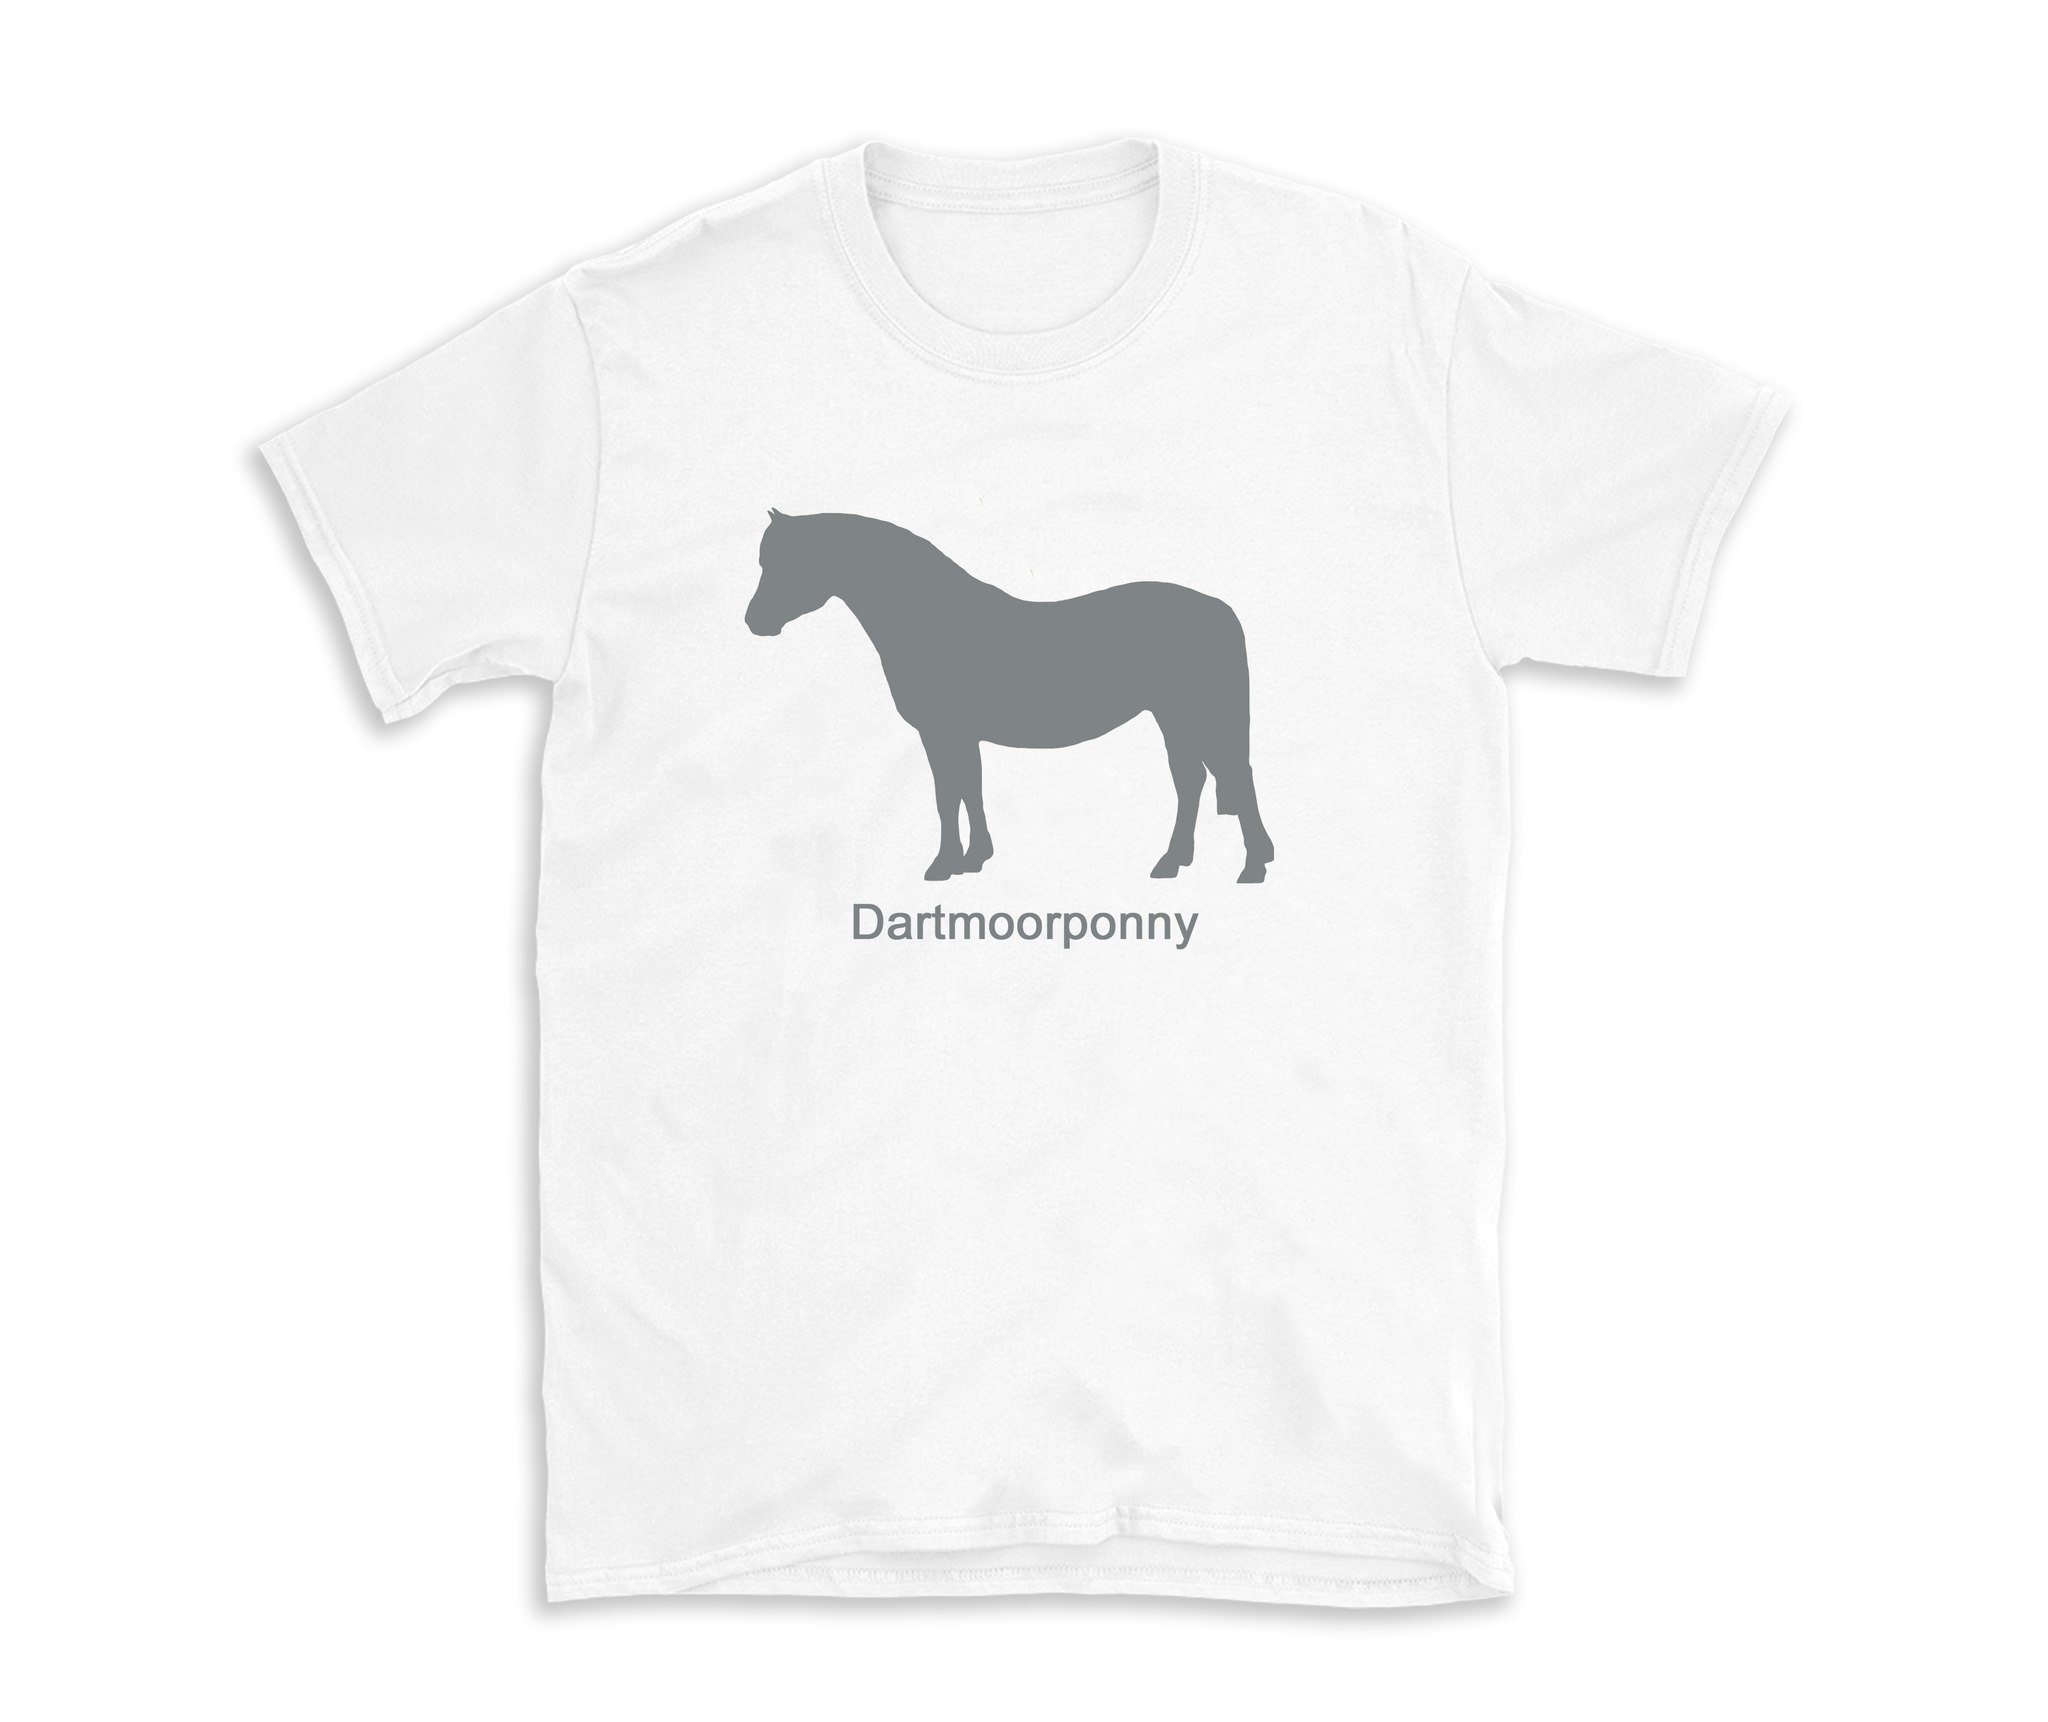 Tshirt Dartmoorponnyn häst ras ponny Dartmoor Devon England Englands äldsta raser ridhäst körning vagn mode kläder horse